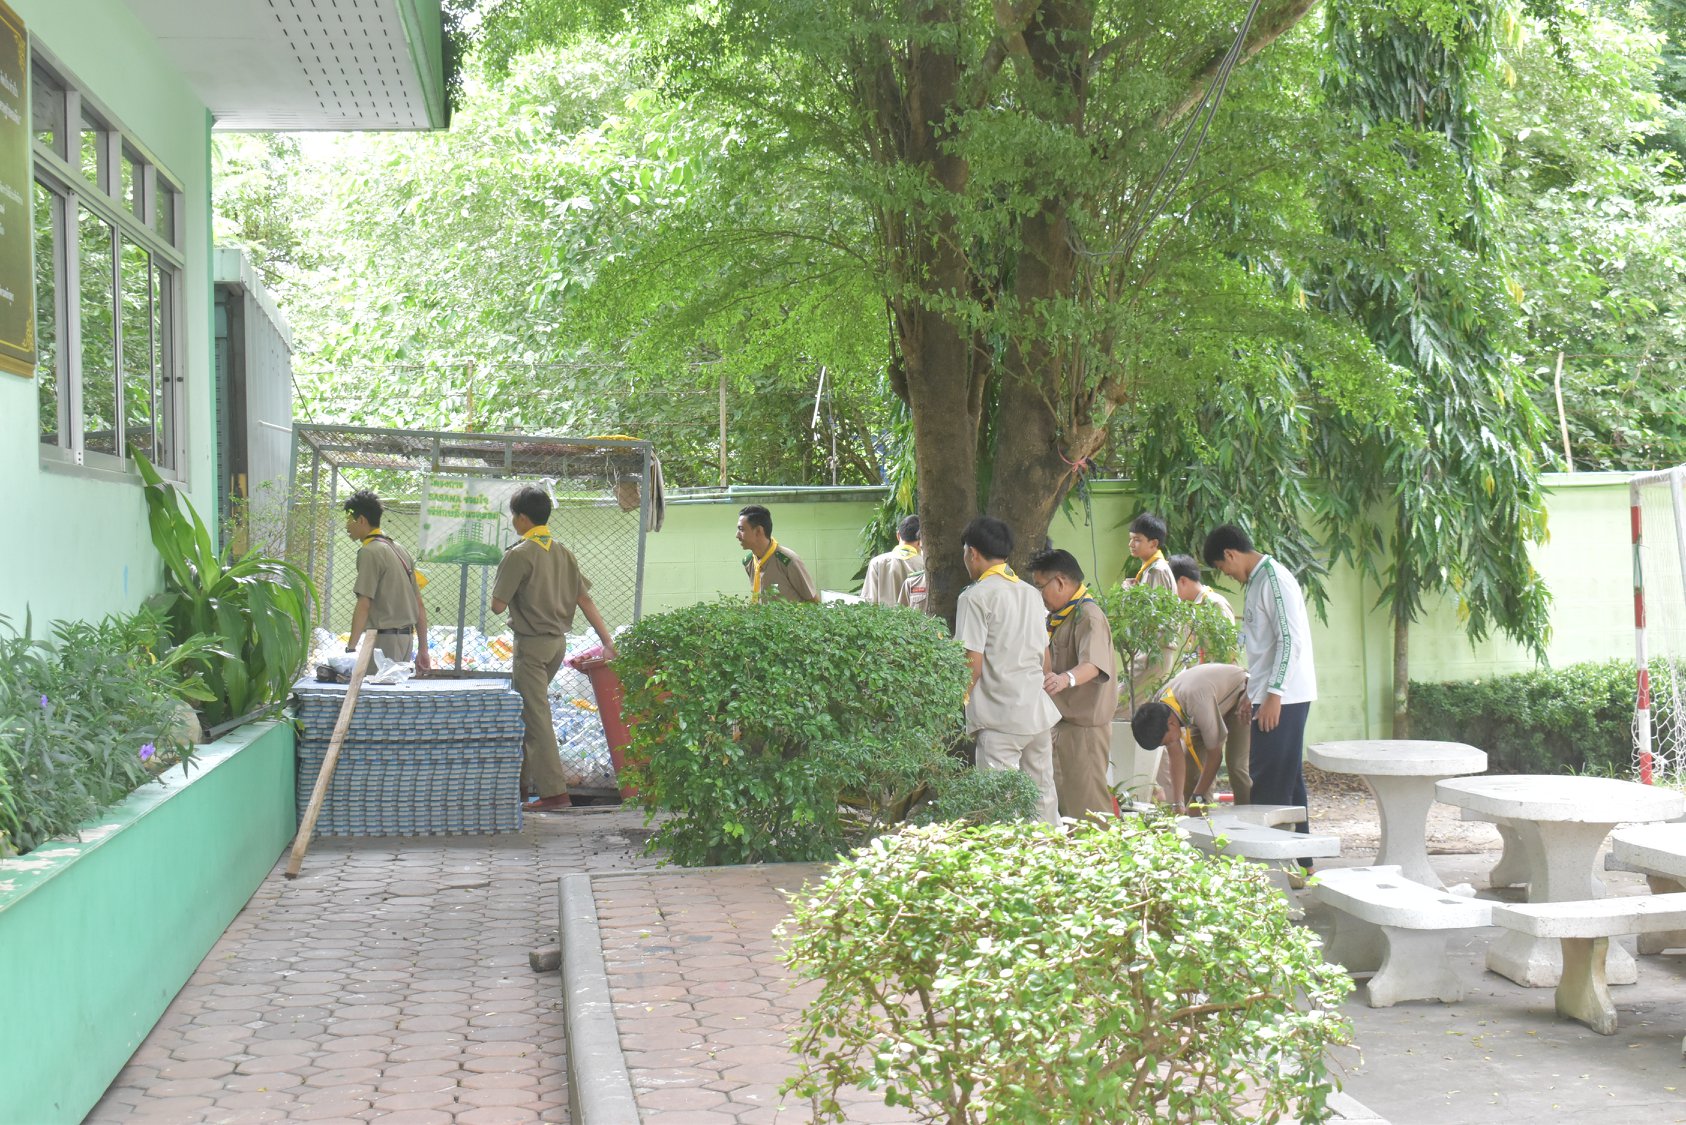 นักเรียนนักศึกษาลูกเสือวิสามัญ ร่วมกันปลูกดอกมะลิในบริเวณวิทยาลัย